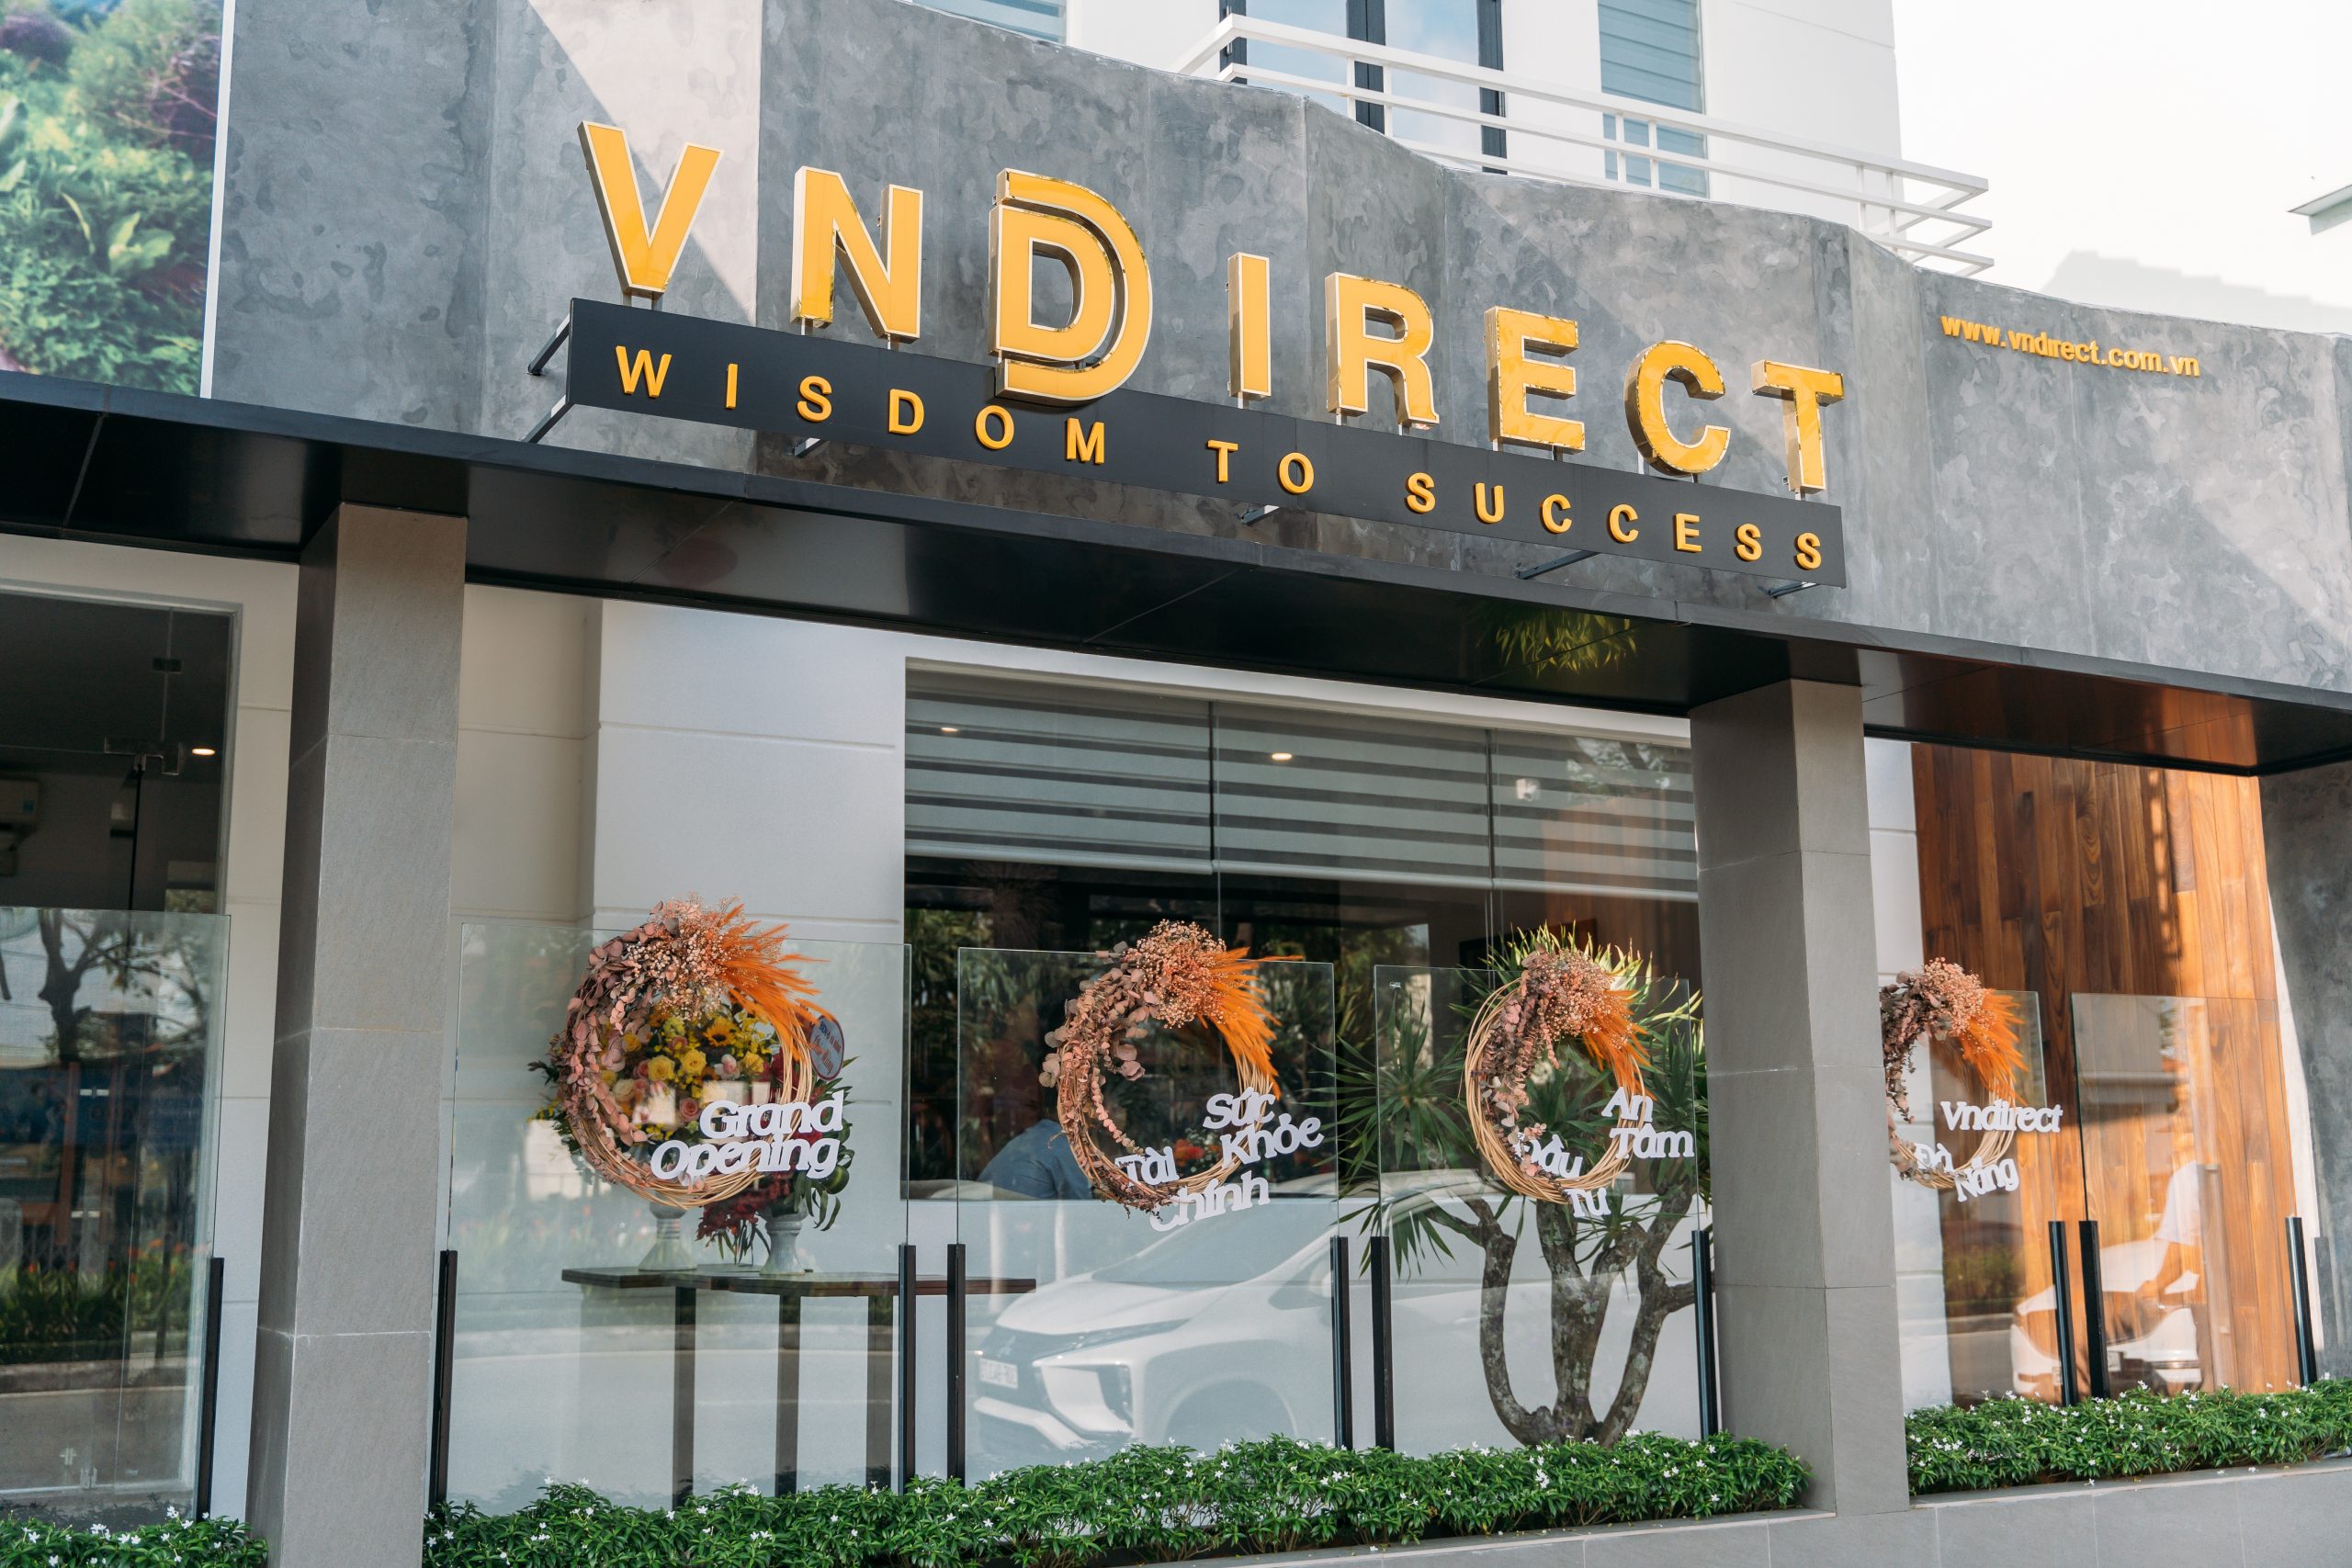 Cấp margin cổ phiếu Thaiholdings khi chưa được phép, VNDirect bị xử phạt